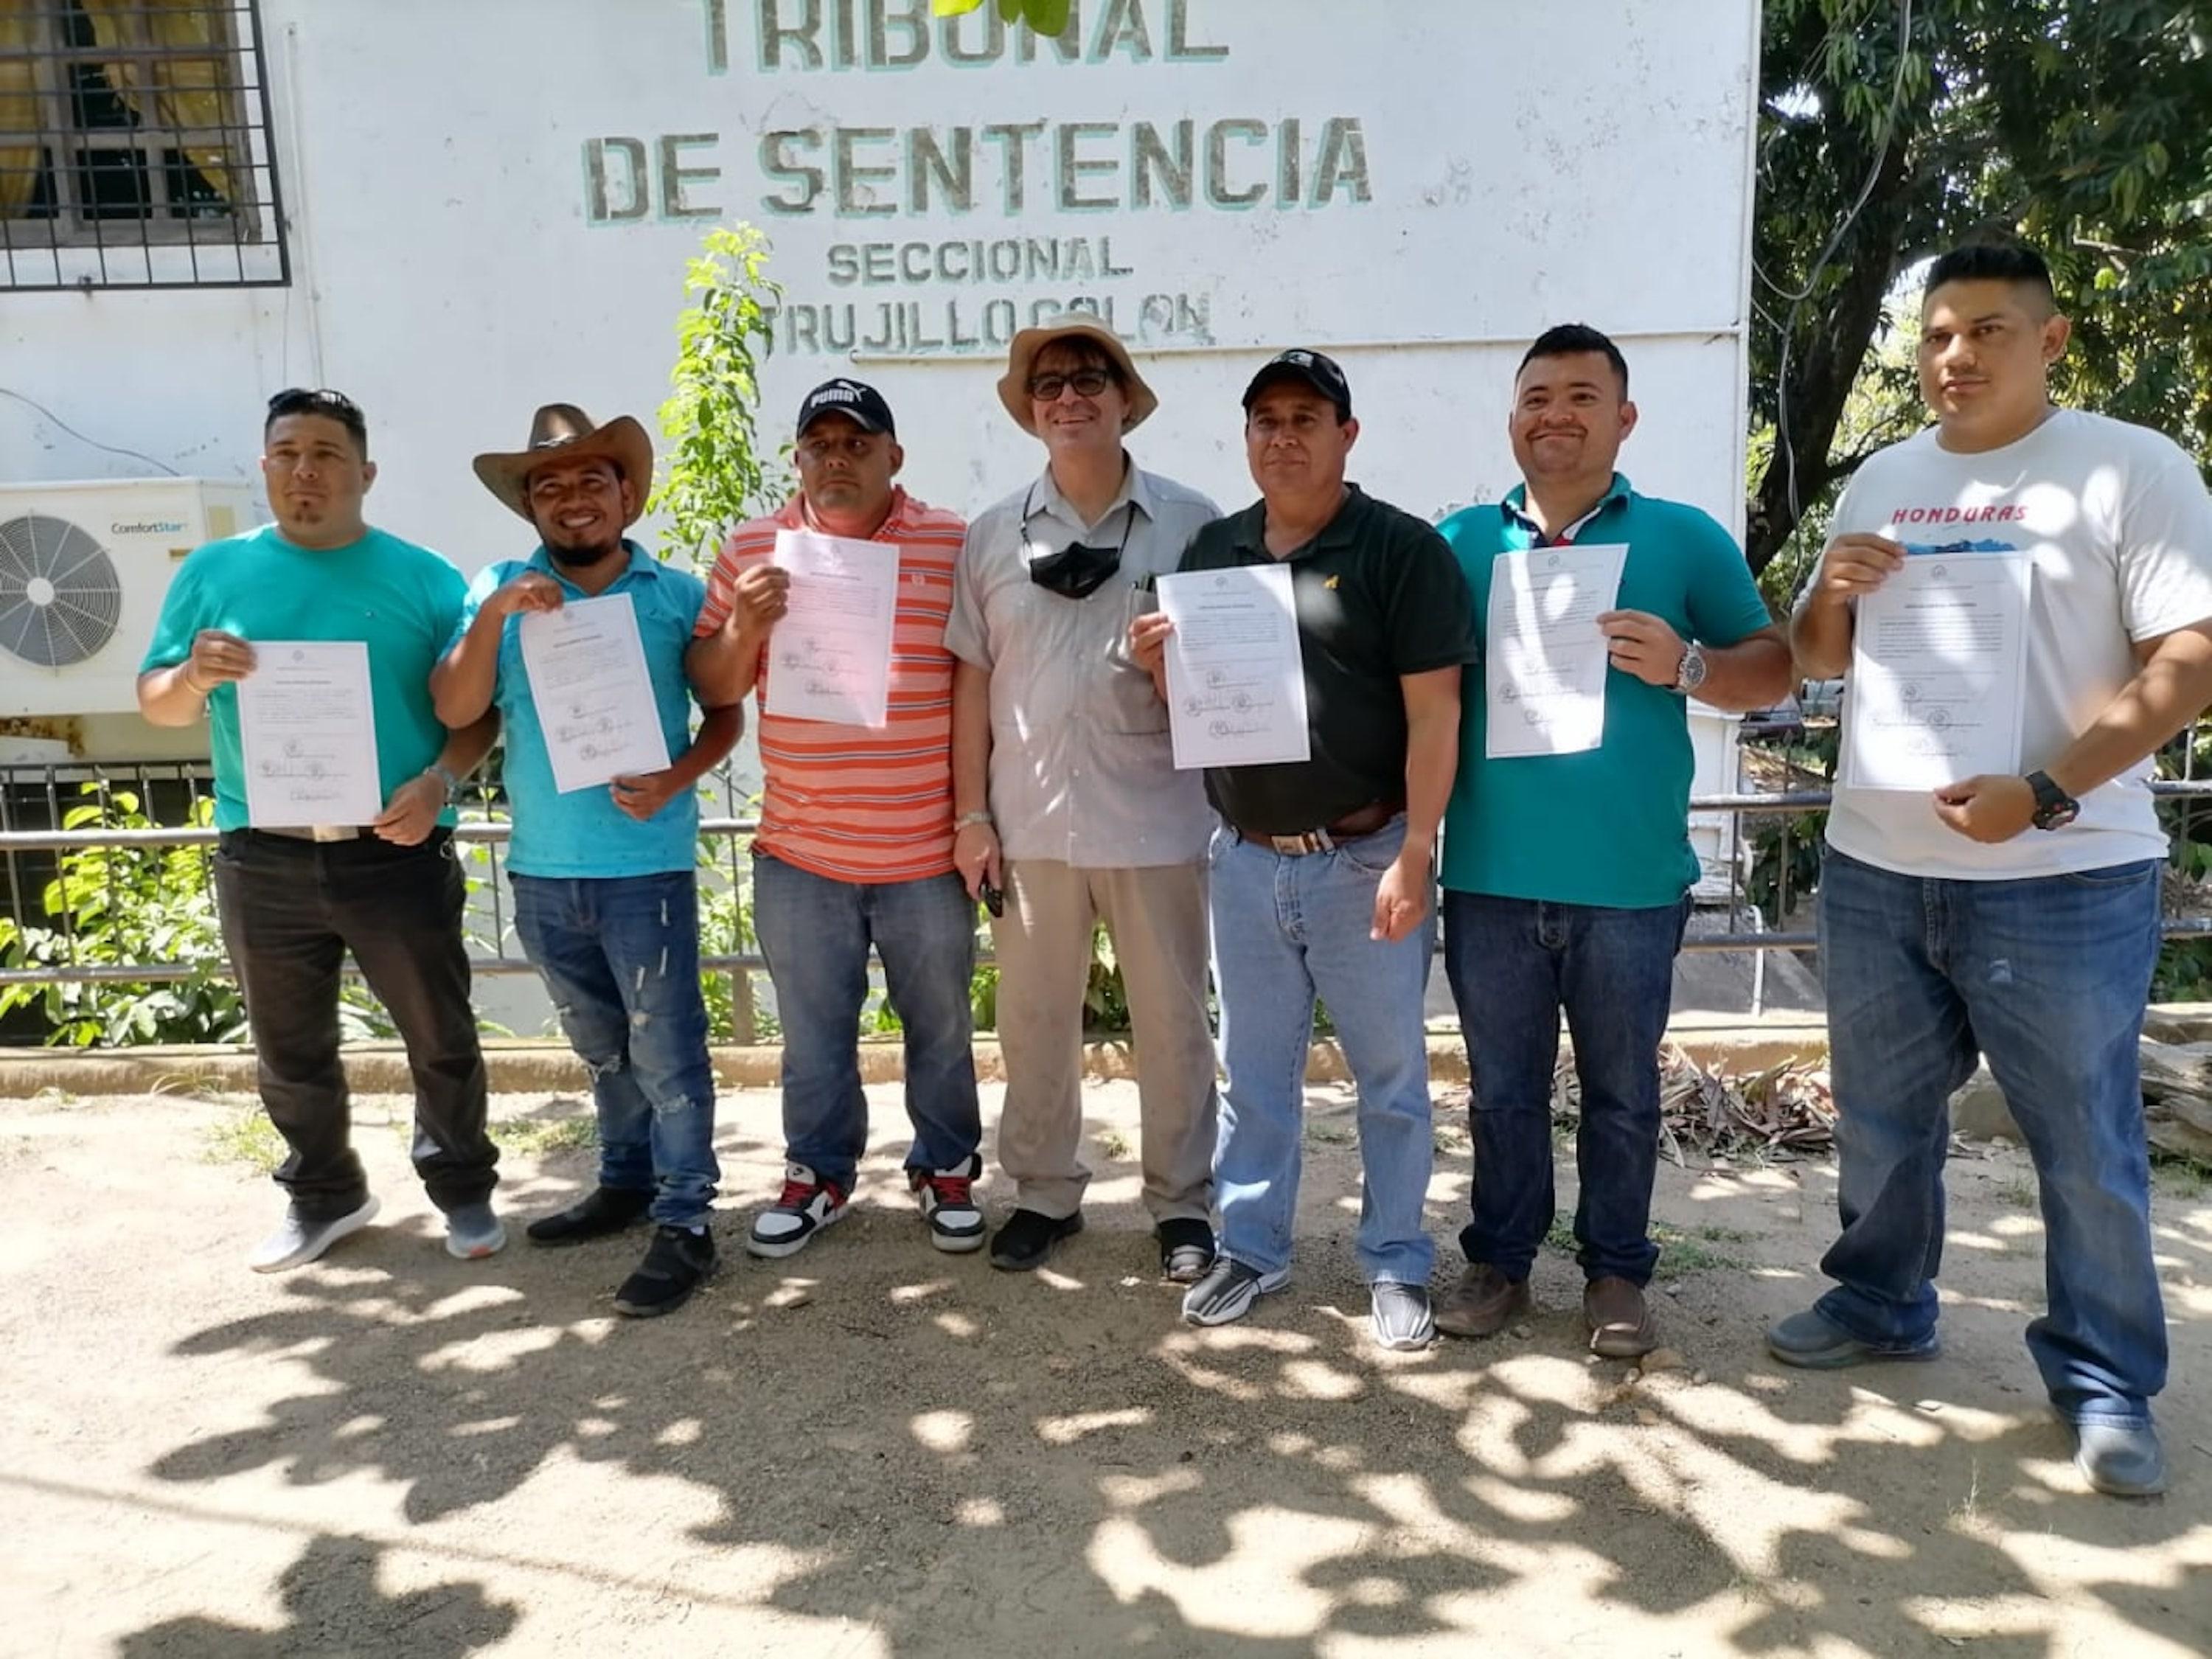 El 24 de marzo de 2022, los defensores del río Guapinol recibieron sus cartas de libertad. Foto cortesía de Dalila Santiago - Comité Municipal de Defensa de los Bienes Comunes y Públicos.